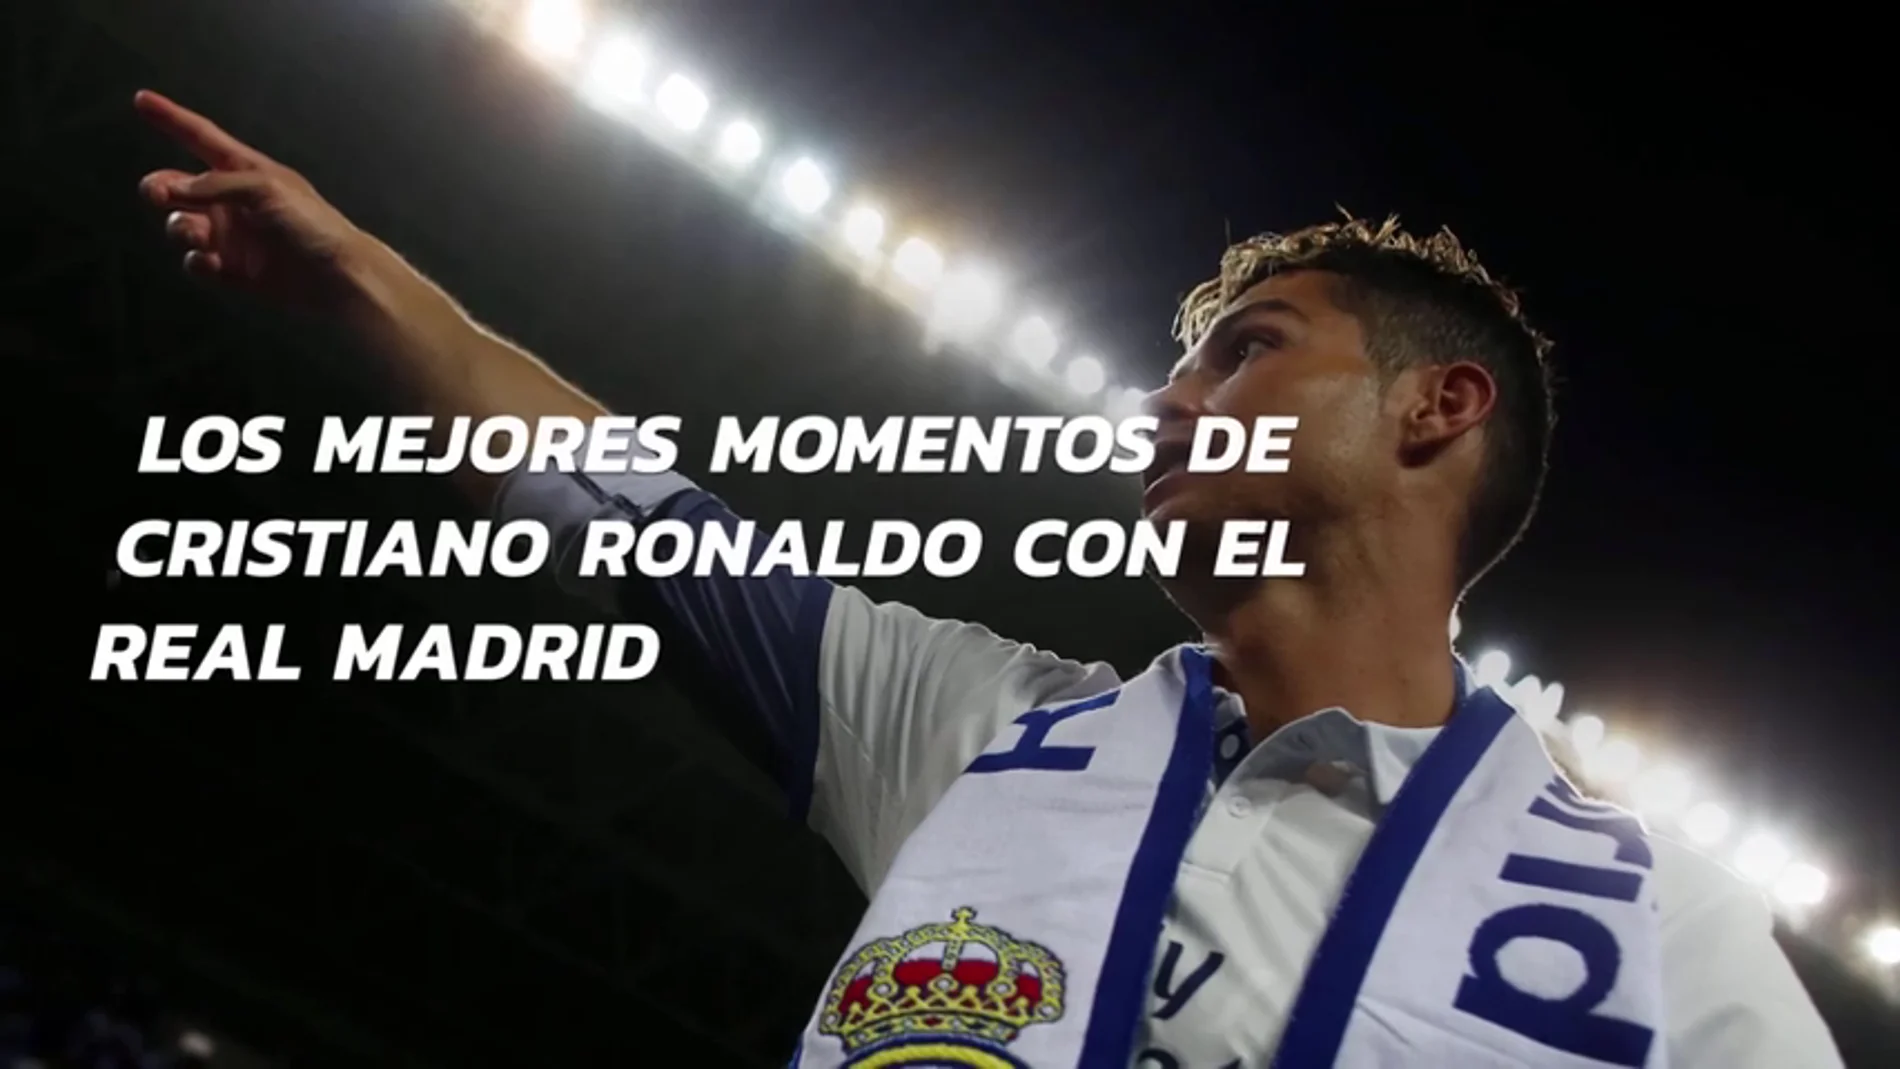 Los mejores momentos de Cristiano Ronaldo con el Real Madrid